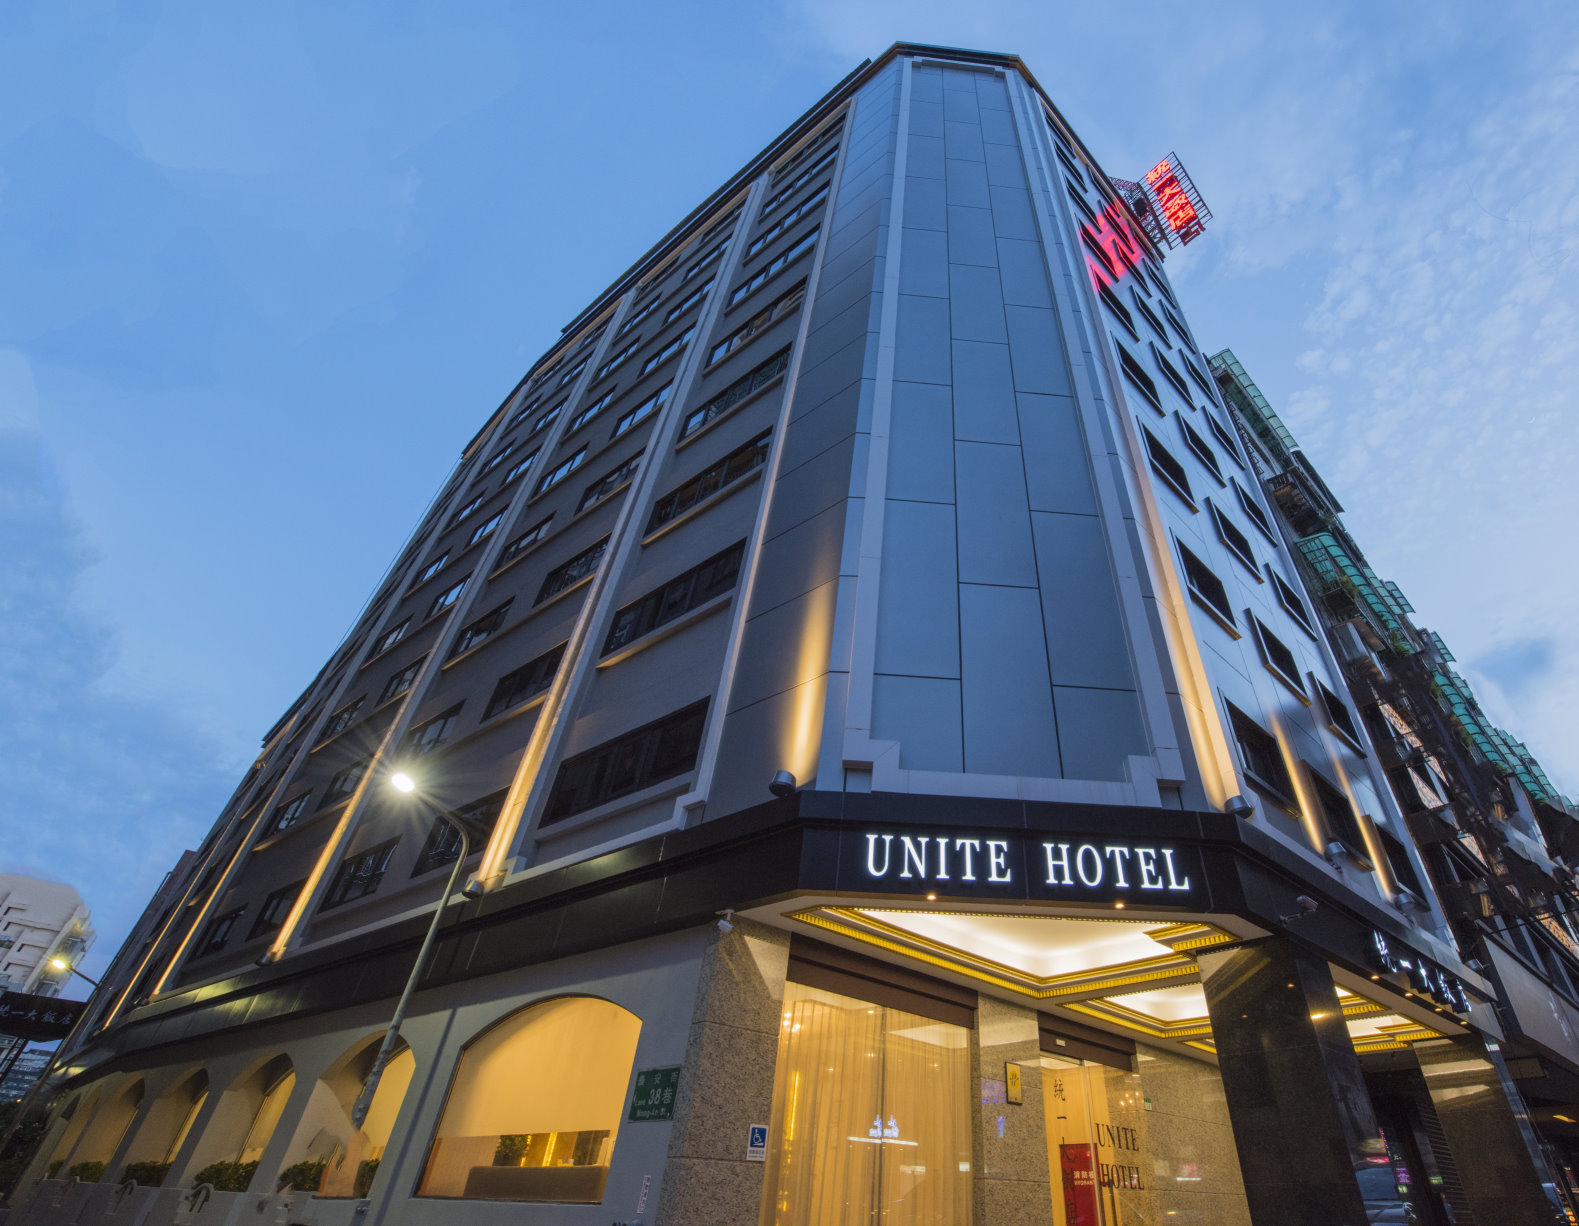 Unite hotel